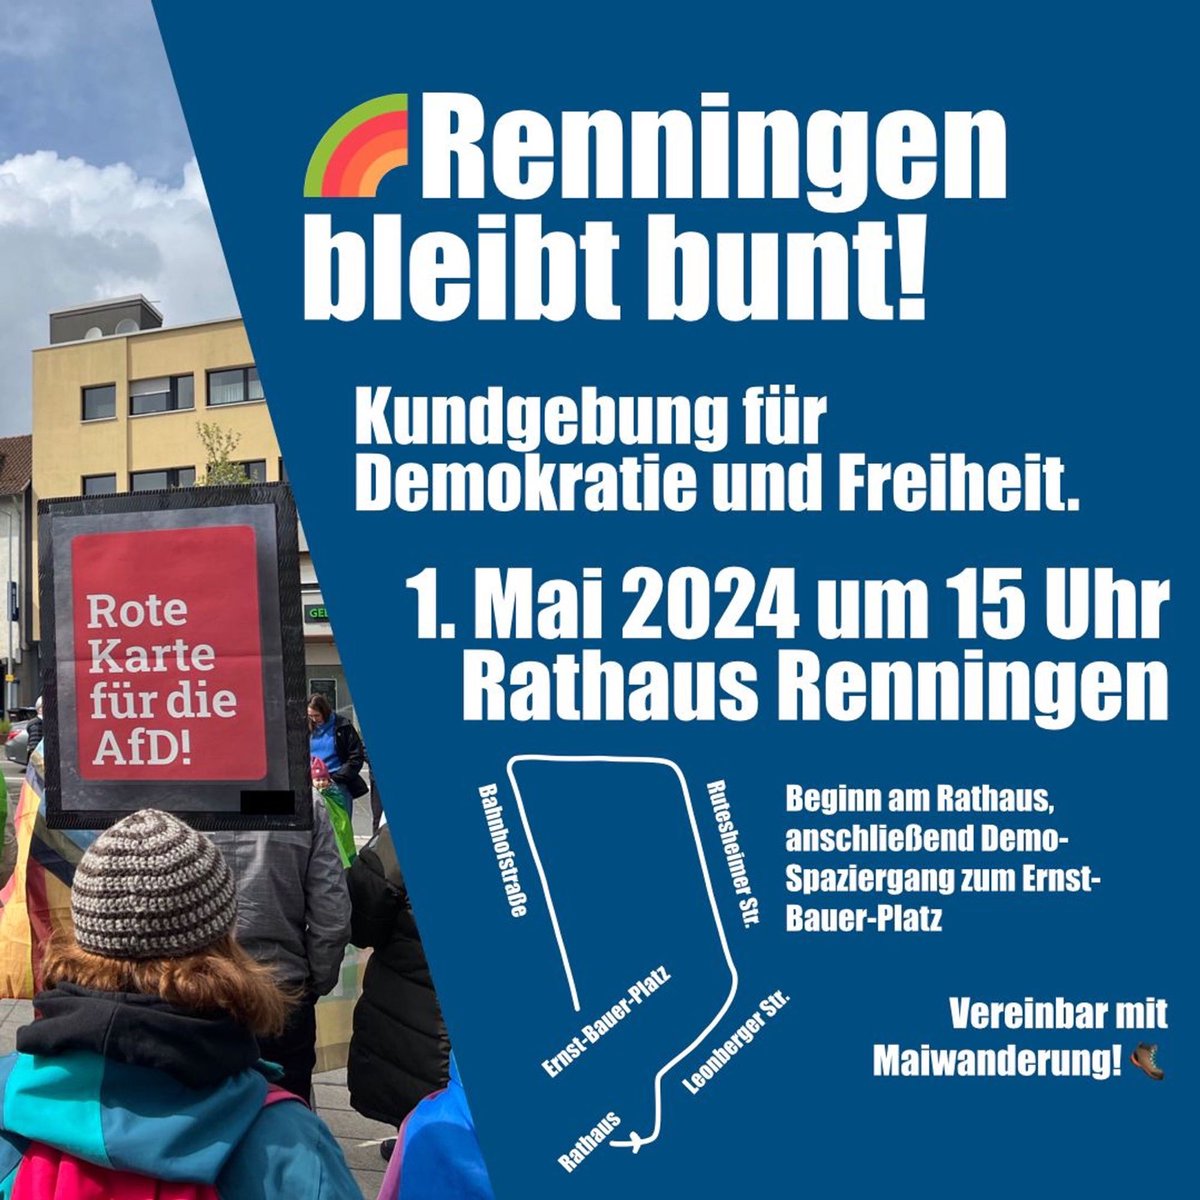 #SaveTheDate #Renningen 01.05.2024 ab 15:00 

Motto: Renningen bleibt bunt

Am Rathaus Renningen

#WirSindDieBrandmauer #NieWiederIstJetzt #LautGegenRechts #SeiEinMensch #NoAfD